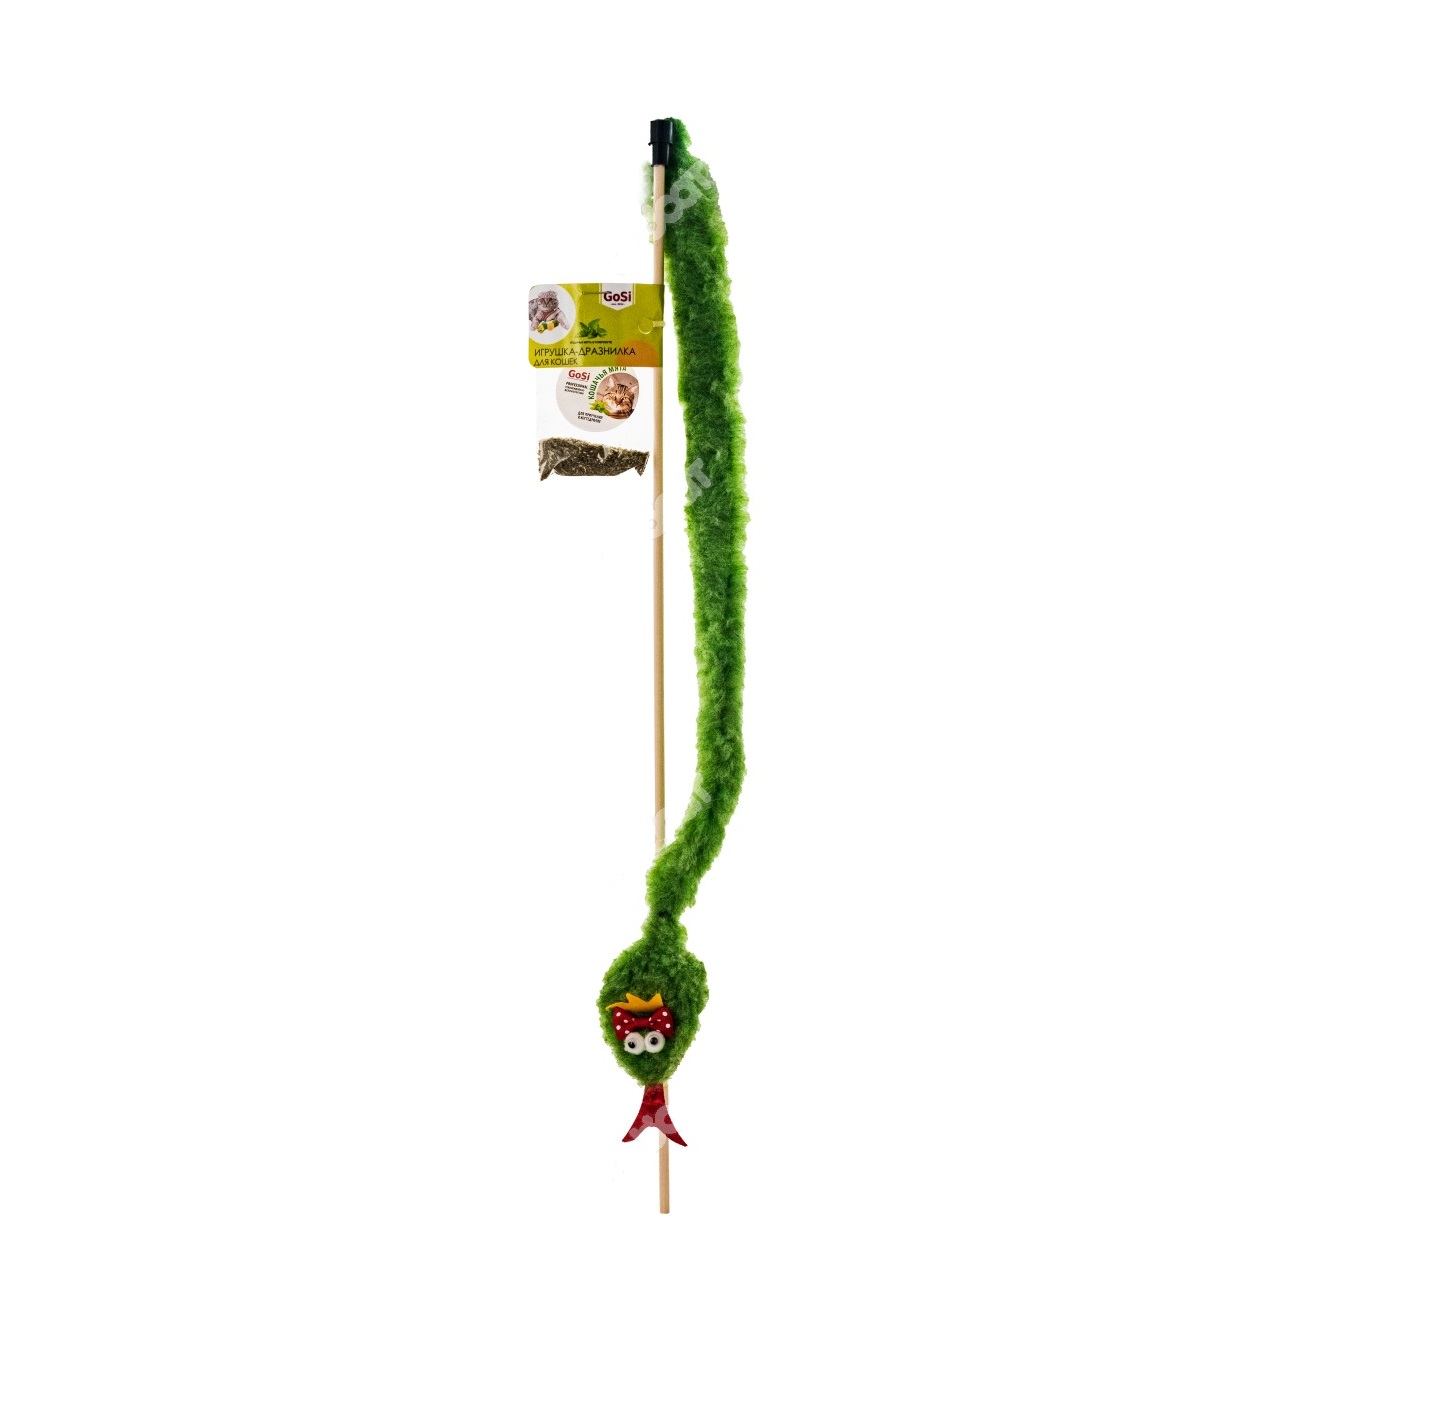  Игрушка GoSi махалка-дразнилка, Змея Яна королевская зеленая с мятой, 45см